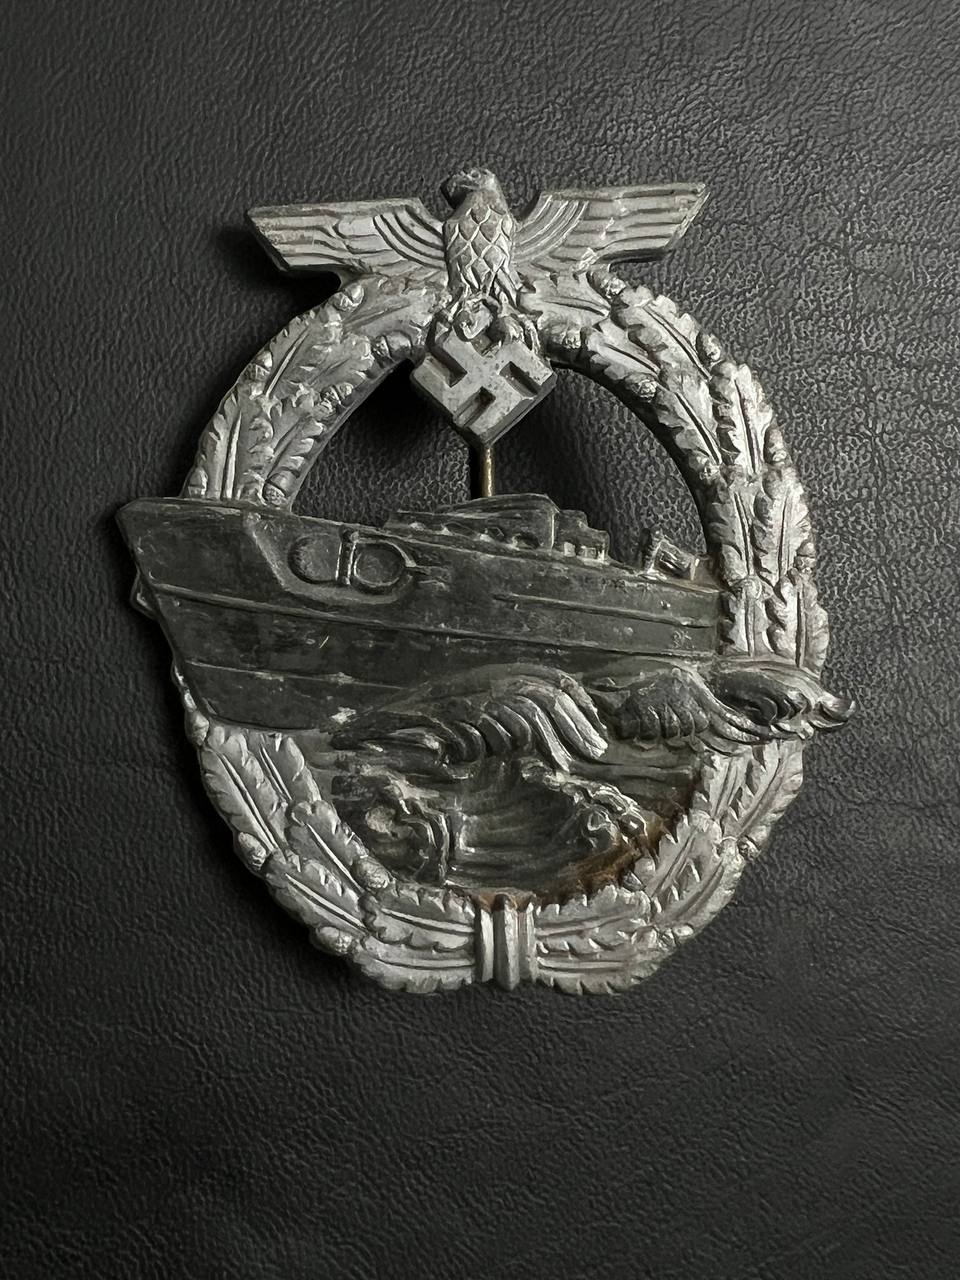 Квалификационный знак Кригсмарине для экипажей торпедных катеров. От Алексея С.